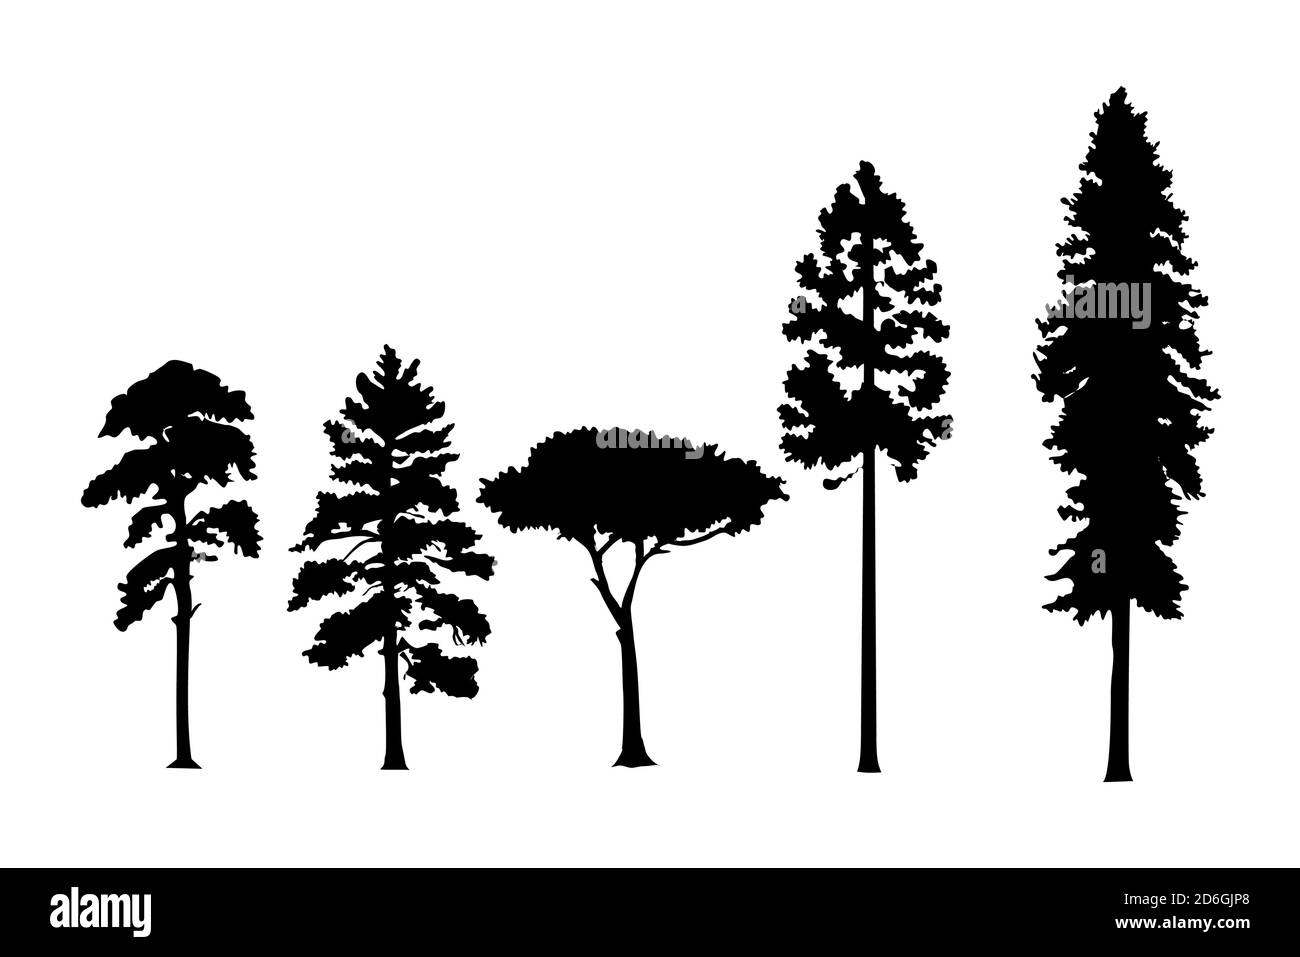 Varietà di pinete vettoriali silhouette isolate su sfondo bianco. Può essere utilizzato come sorgente di pennelli digitali. Vettore. Illustrazione Vettoriale